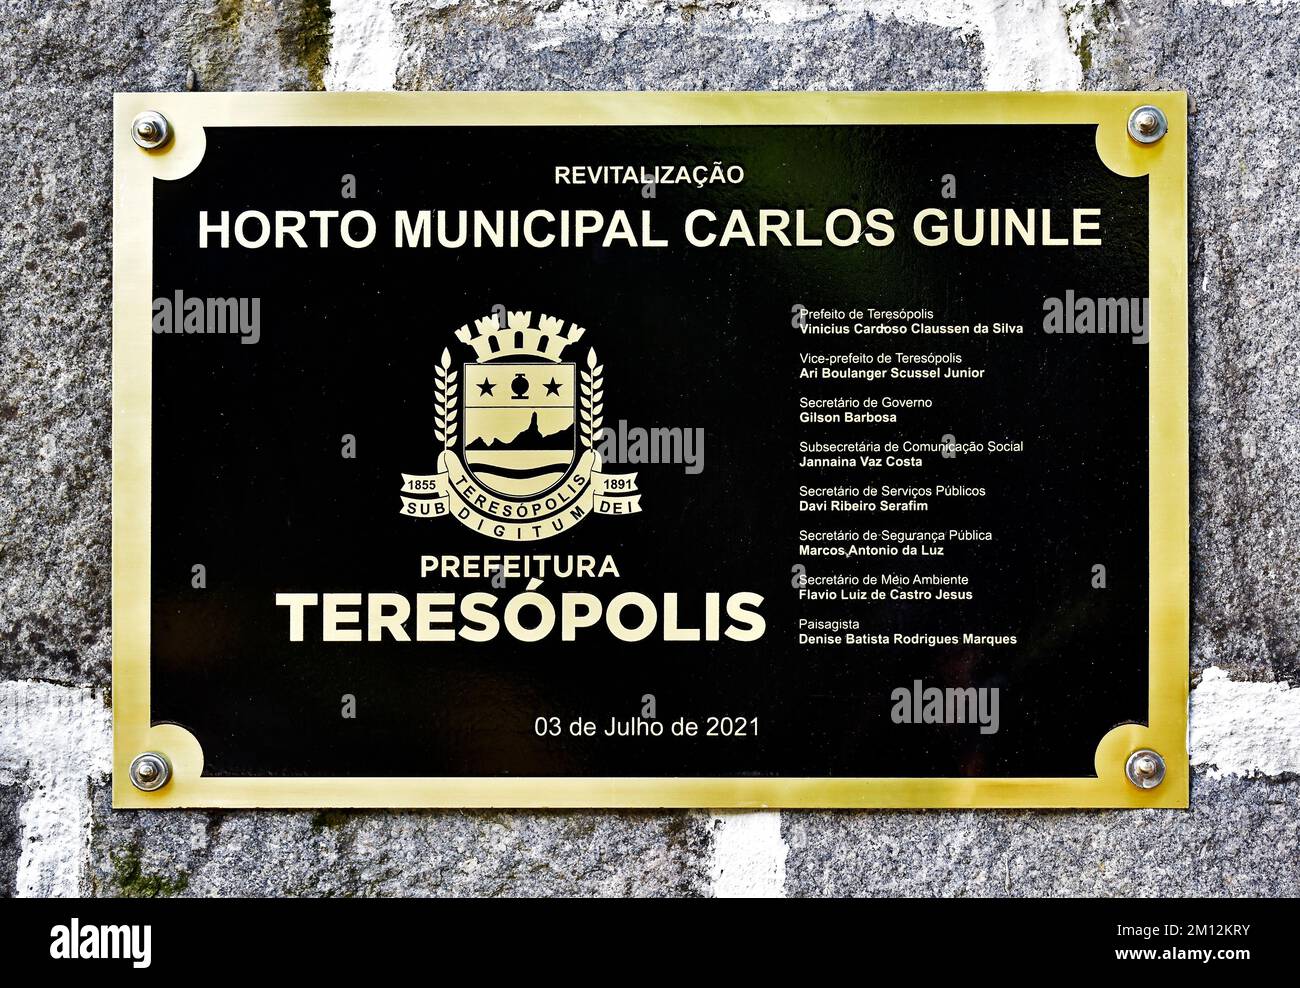 TERESÓPOLIS, RÍO DE JANEIRO, BRASIL - 25 de octubre de 2022: Signo metálico que indica la revitalización del Jardín Municipal Carlos Guinle Foto de stock